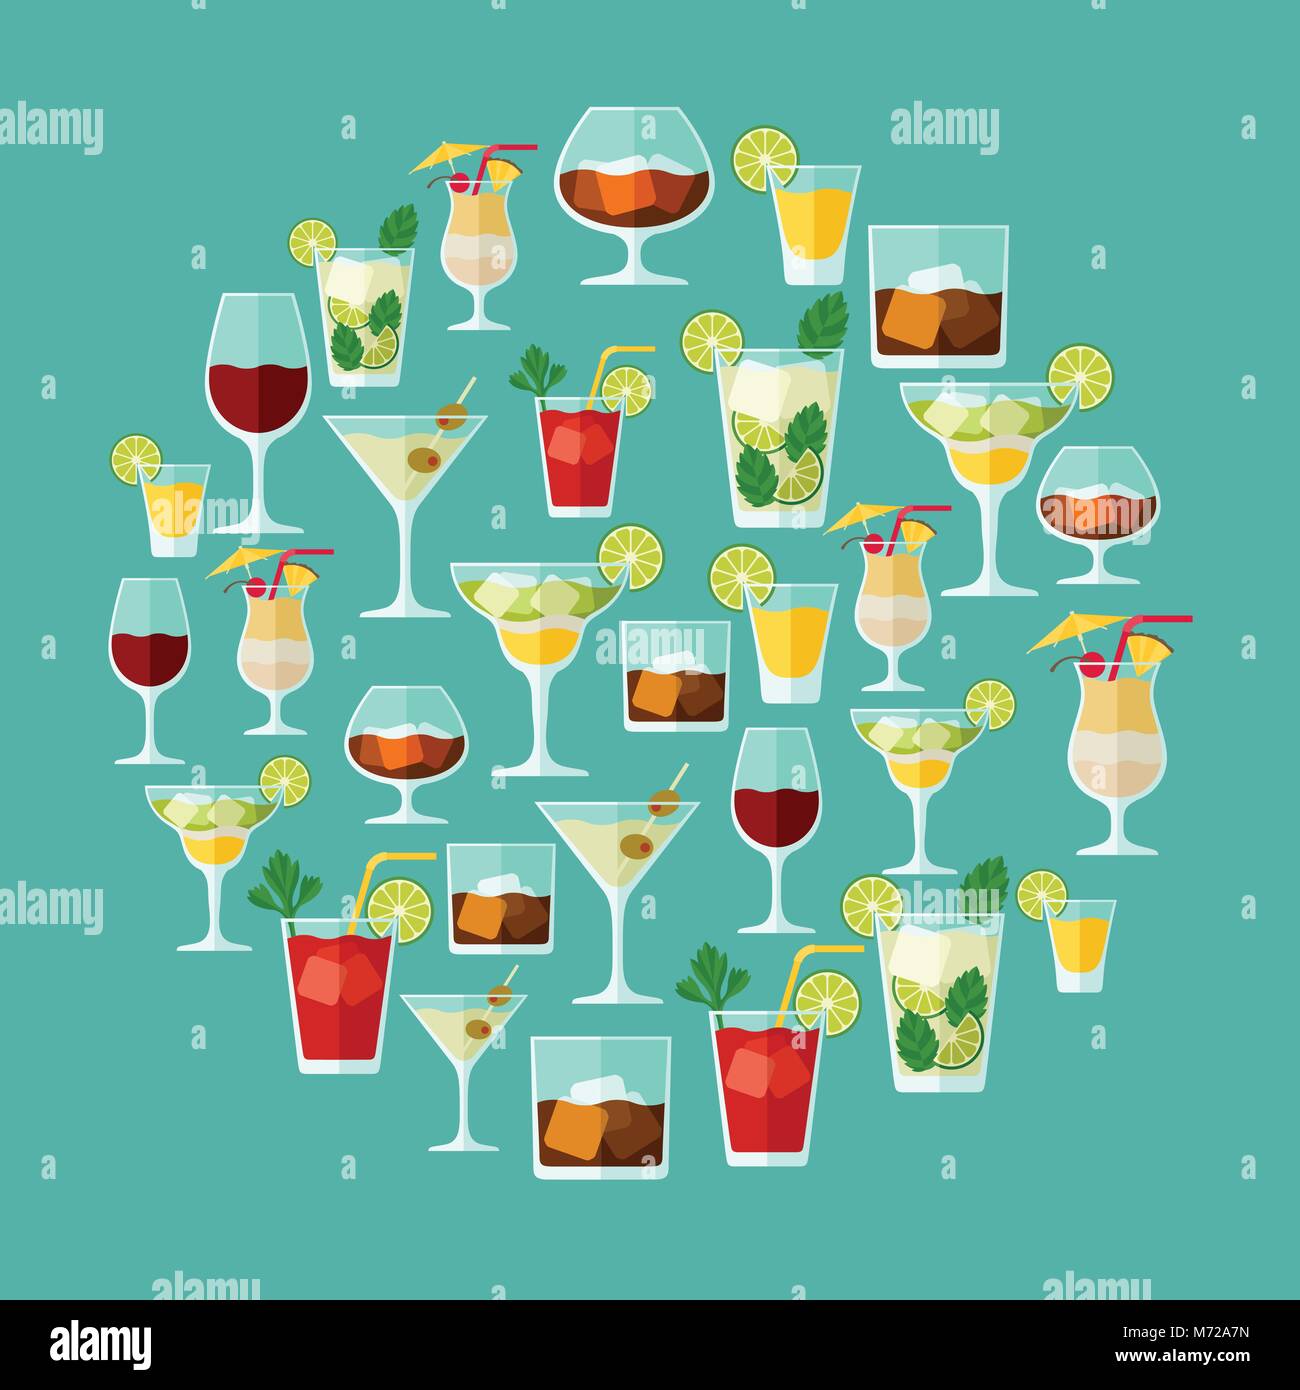 Alkohol Getränke und Cocktails für Menü oder Wein Liste Stock-Vektorgrafik  - Alamy